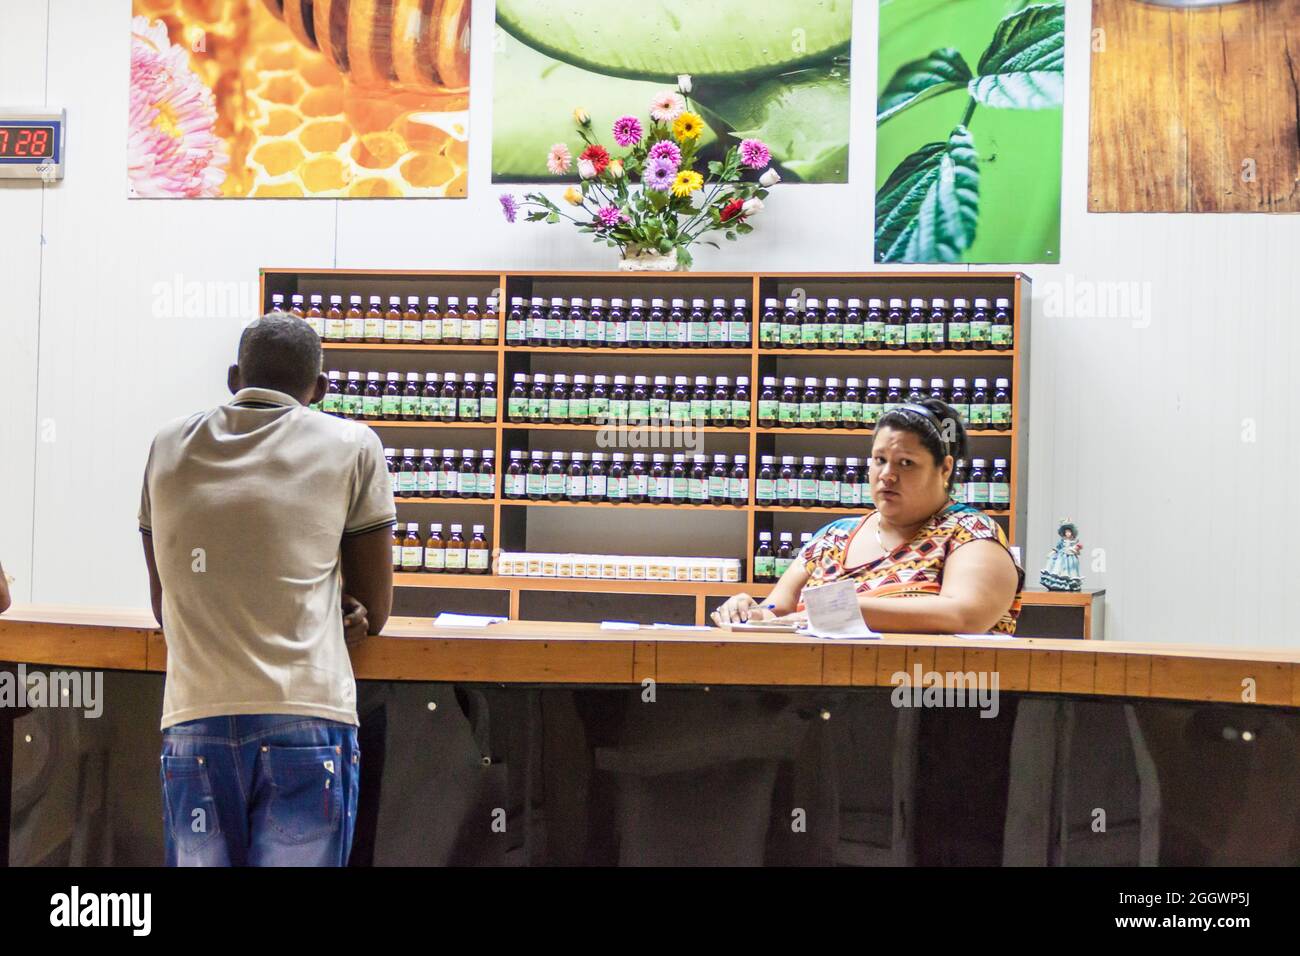 SANTIAGO DE CUBA,  CUBA - FEB 1, 2016:  Interior of  a local shop in Santiago de Cuba, Cuba Stock Photo